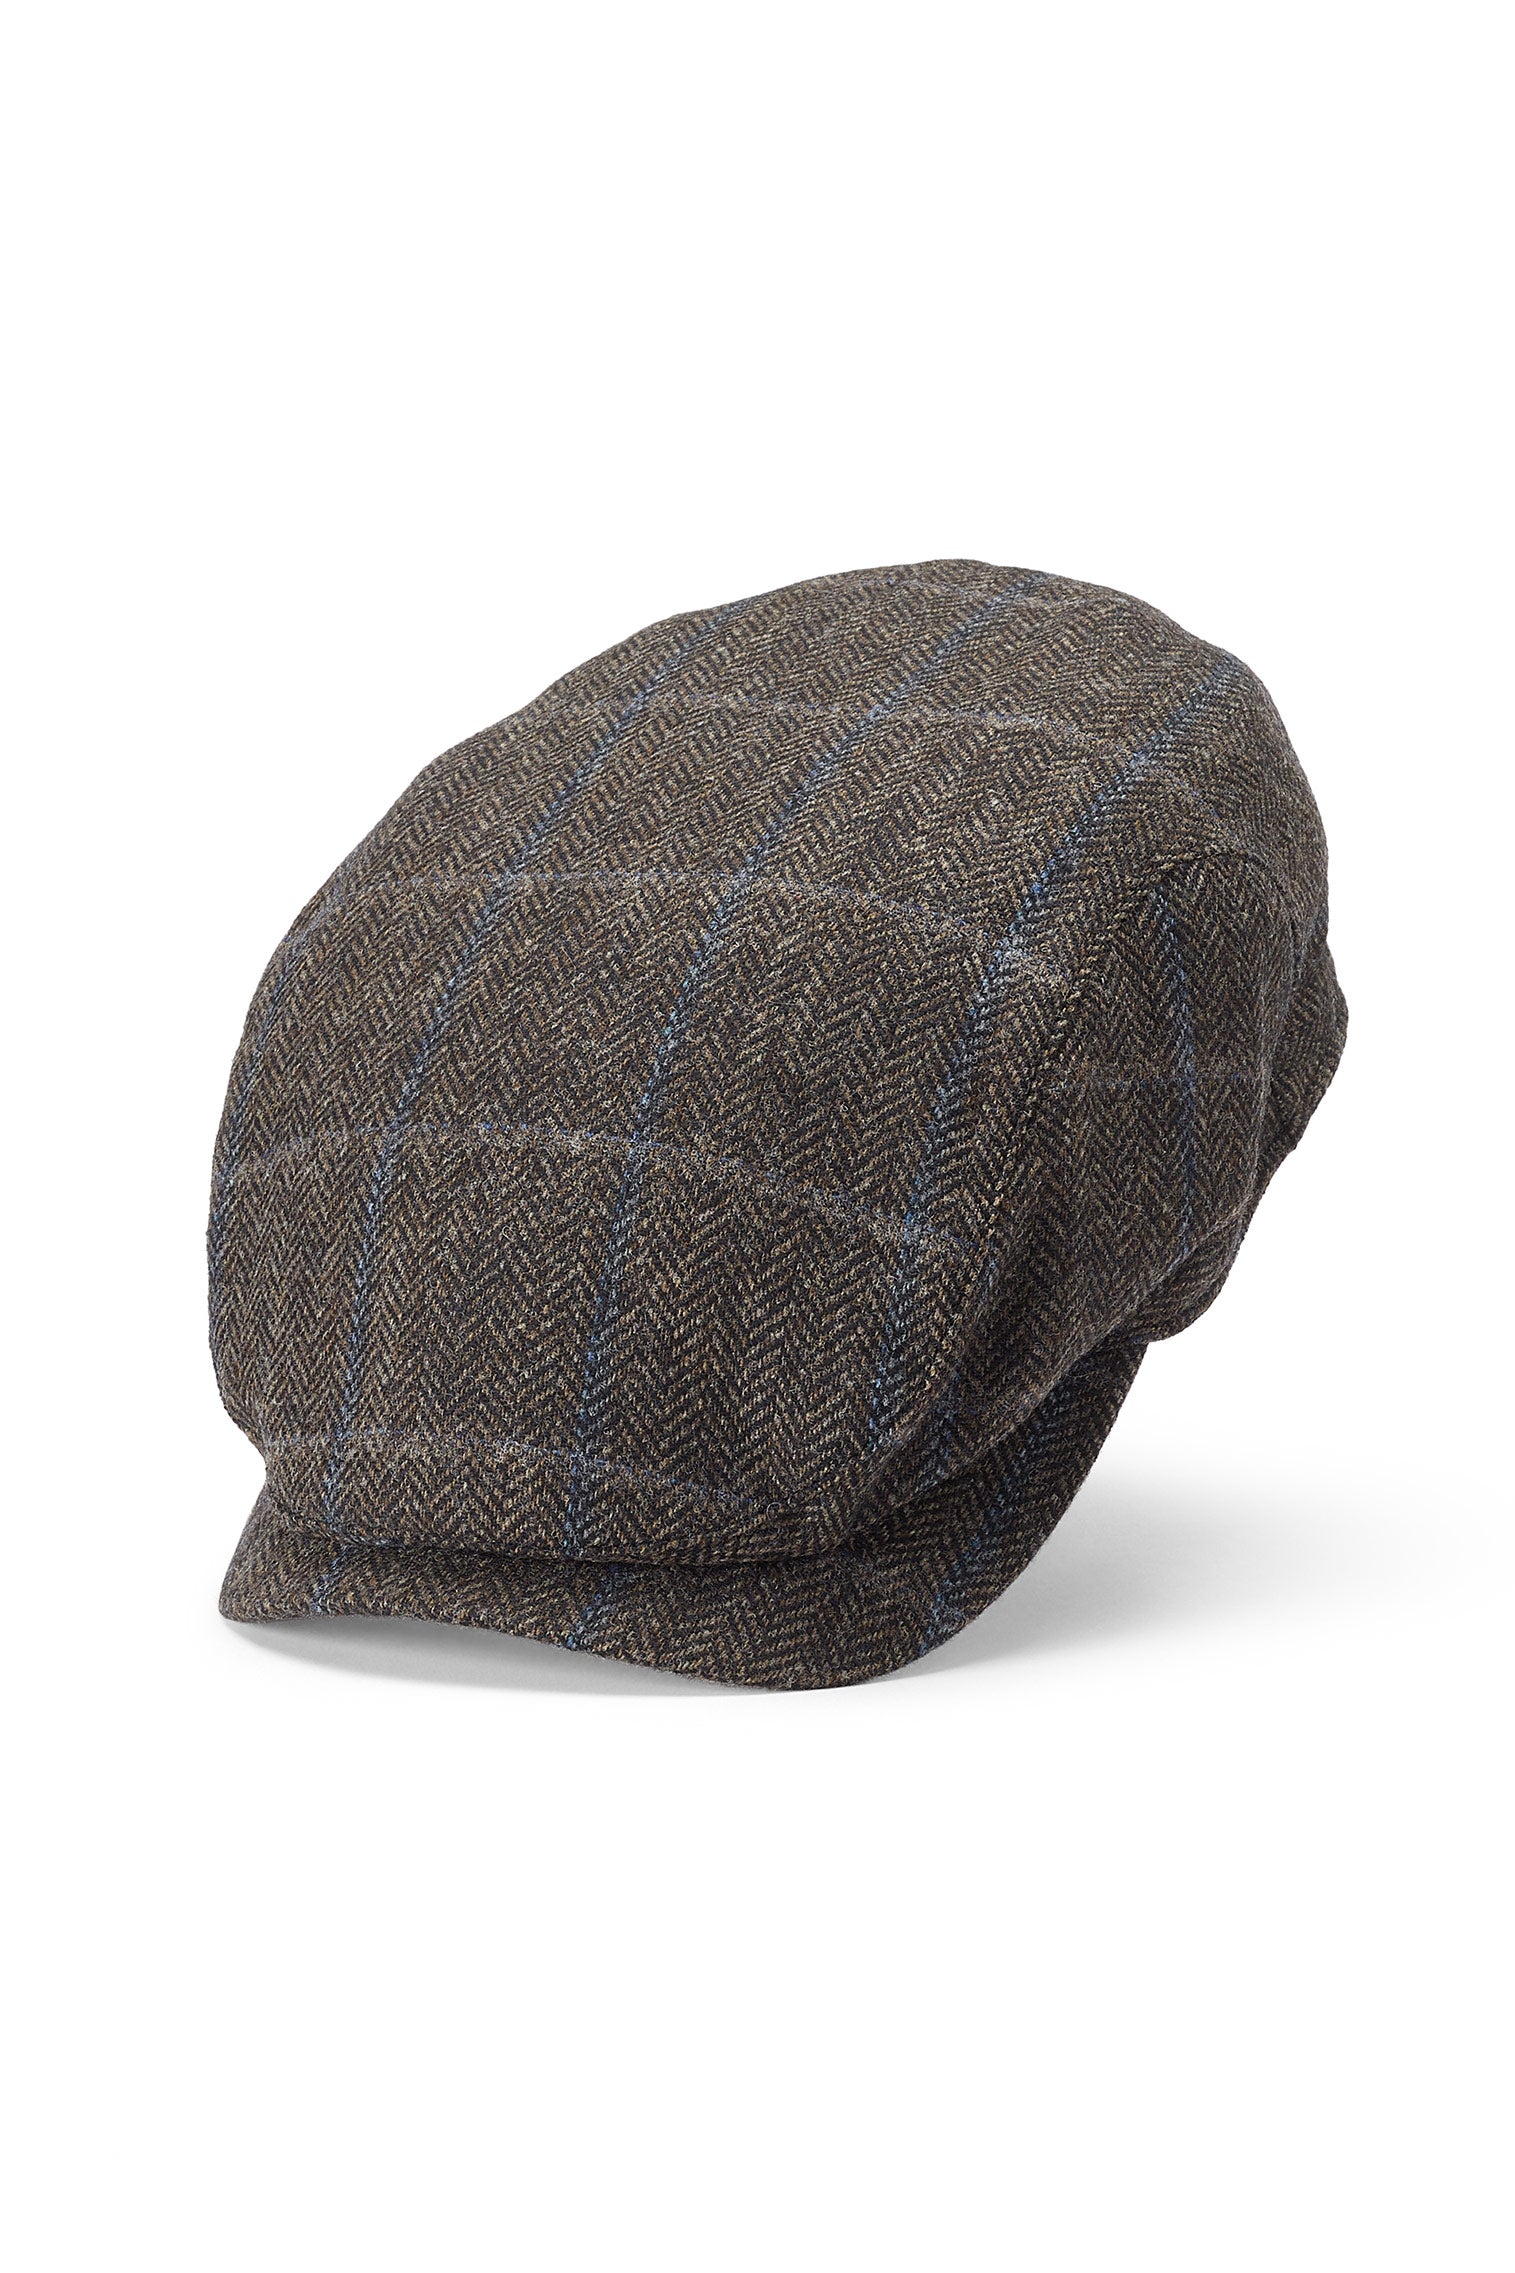 Lynton Brown Flat Cap - Men's Hats - Lock & Co. Hatters London UK